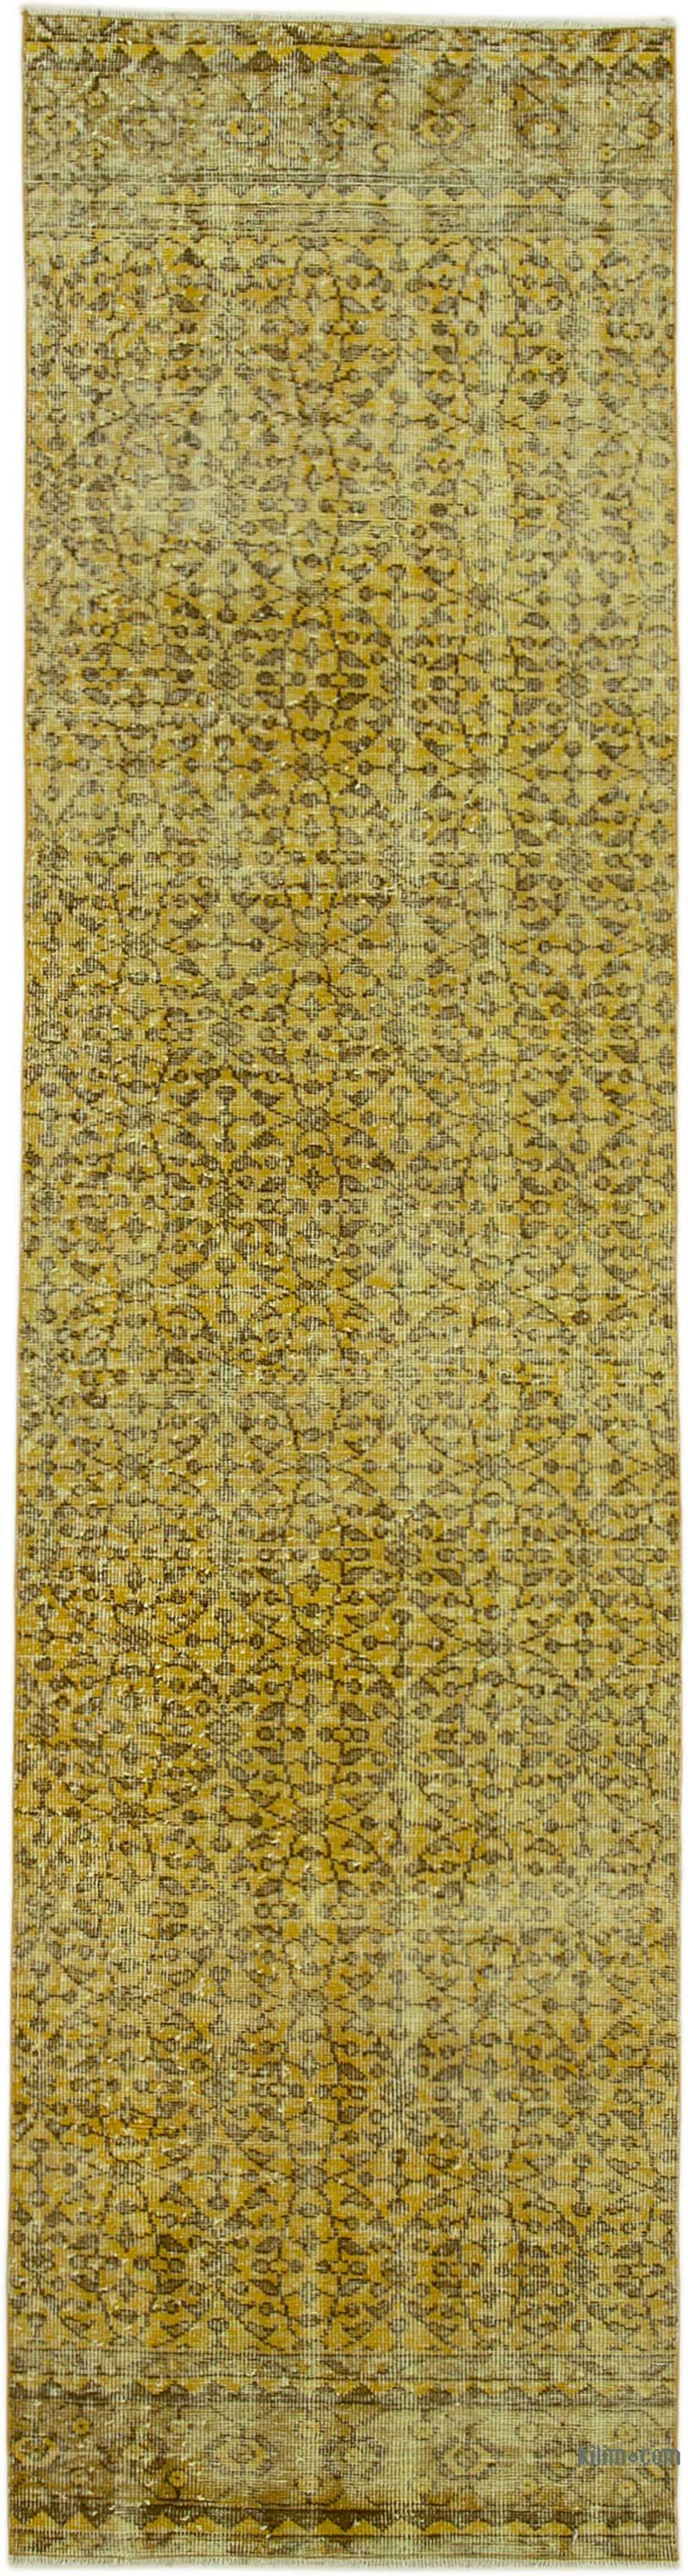 Amarillo Alfombra de Pasillo Turca Vintage Sobreteñida - 80 cm x 311 cm - K0052231